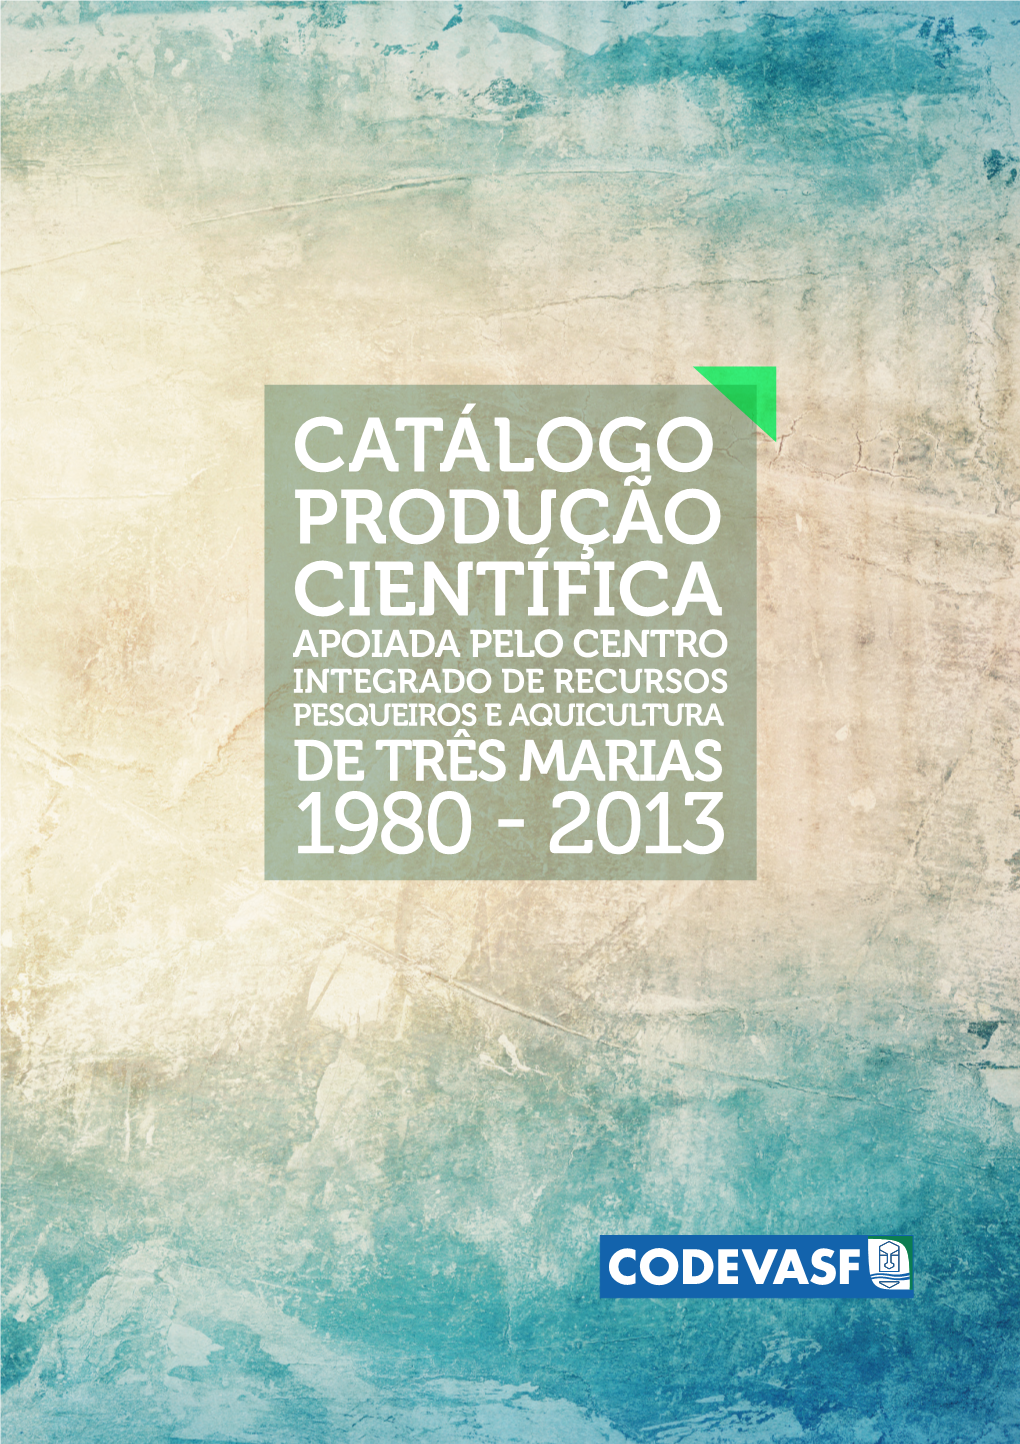 Catálogo Produção Científica Apoiada Pelo Centro Integrado De Recursos Pesqueiros E Aquicultura De Três Marias 1980 - 2013